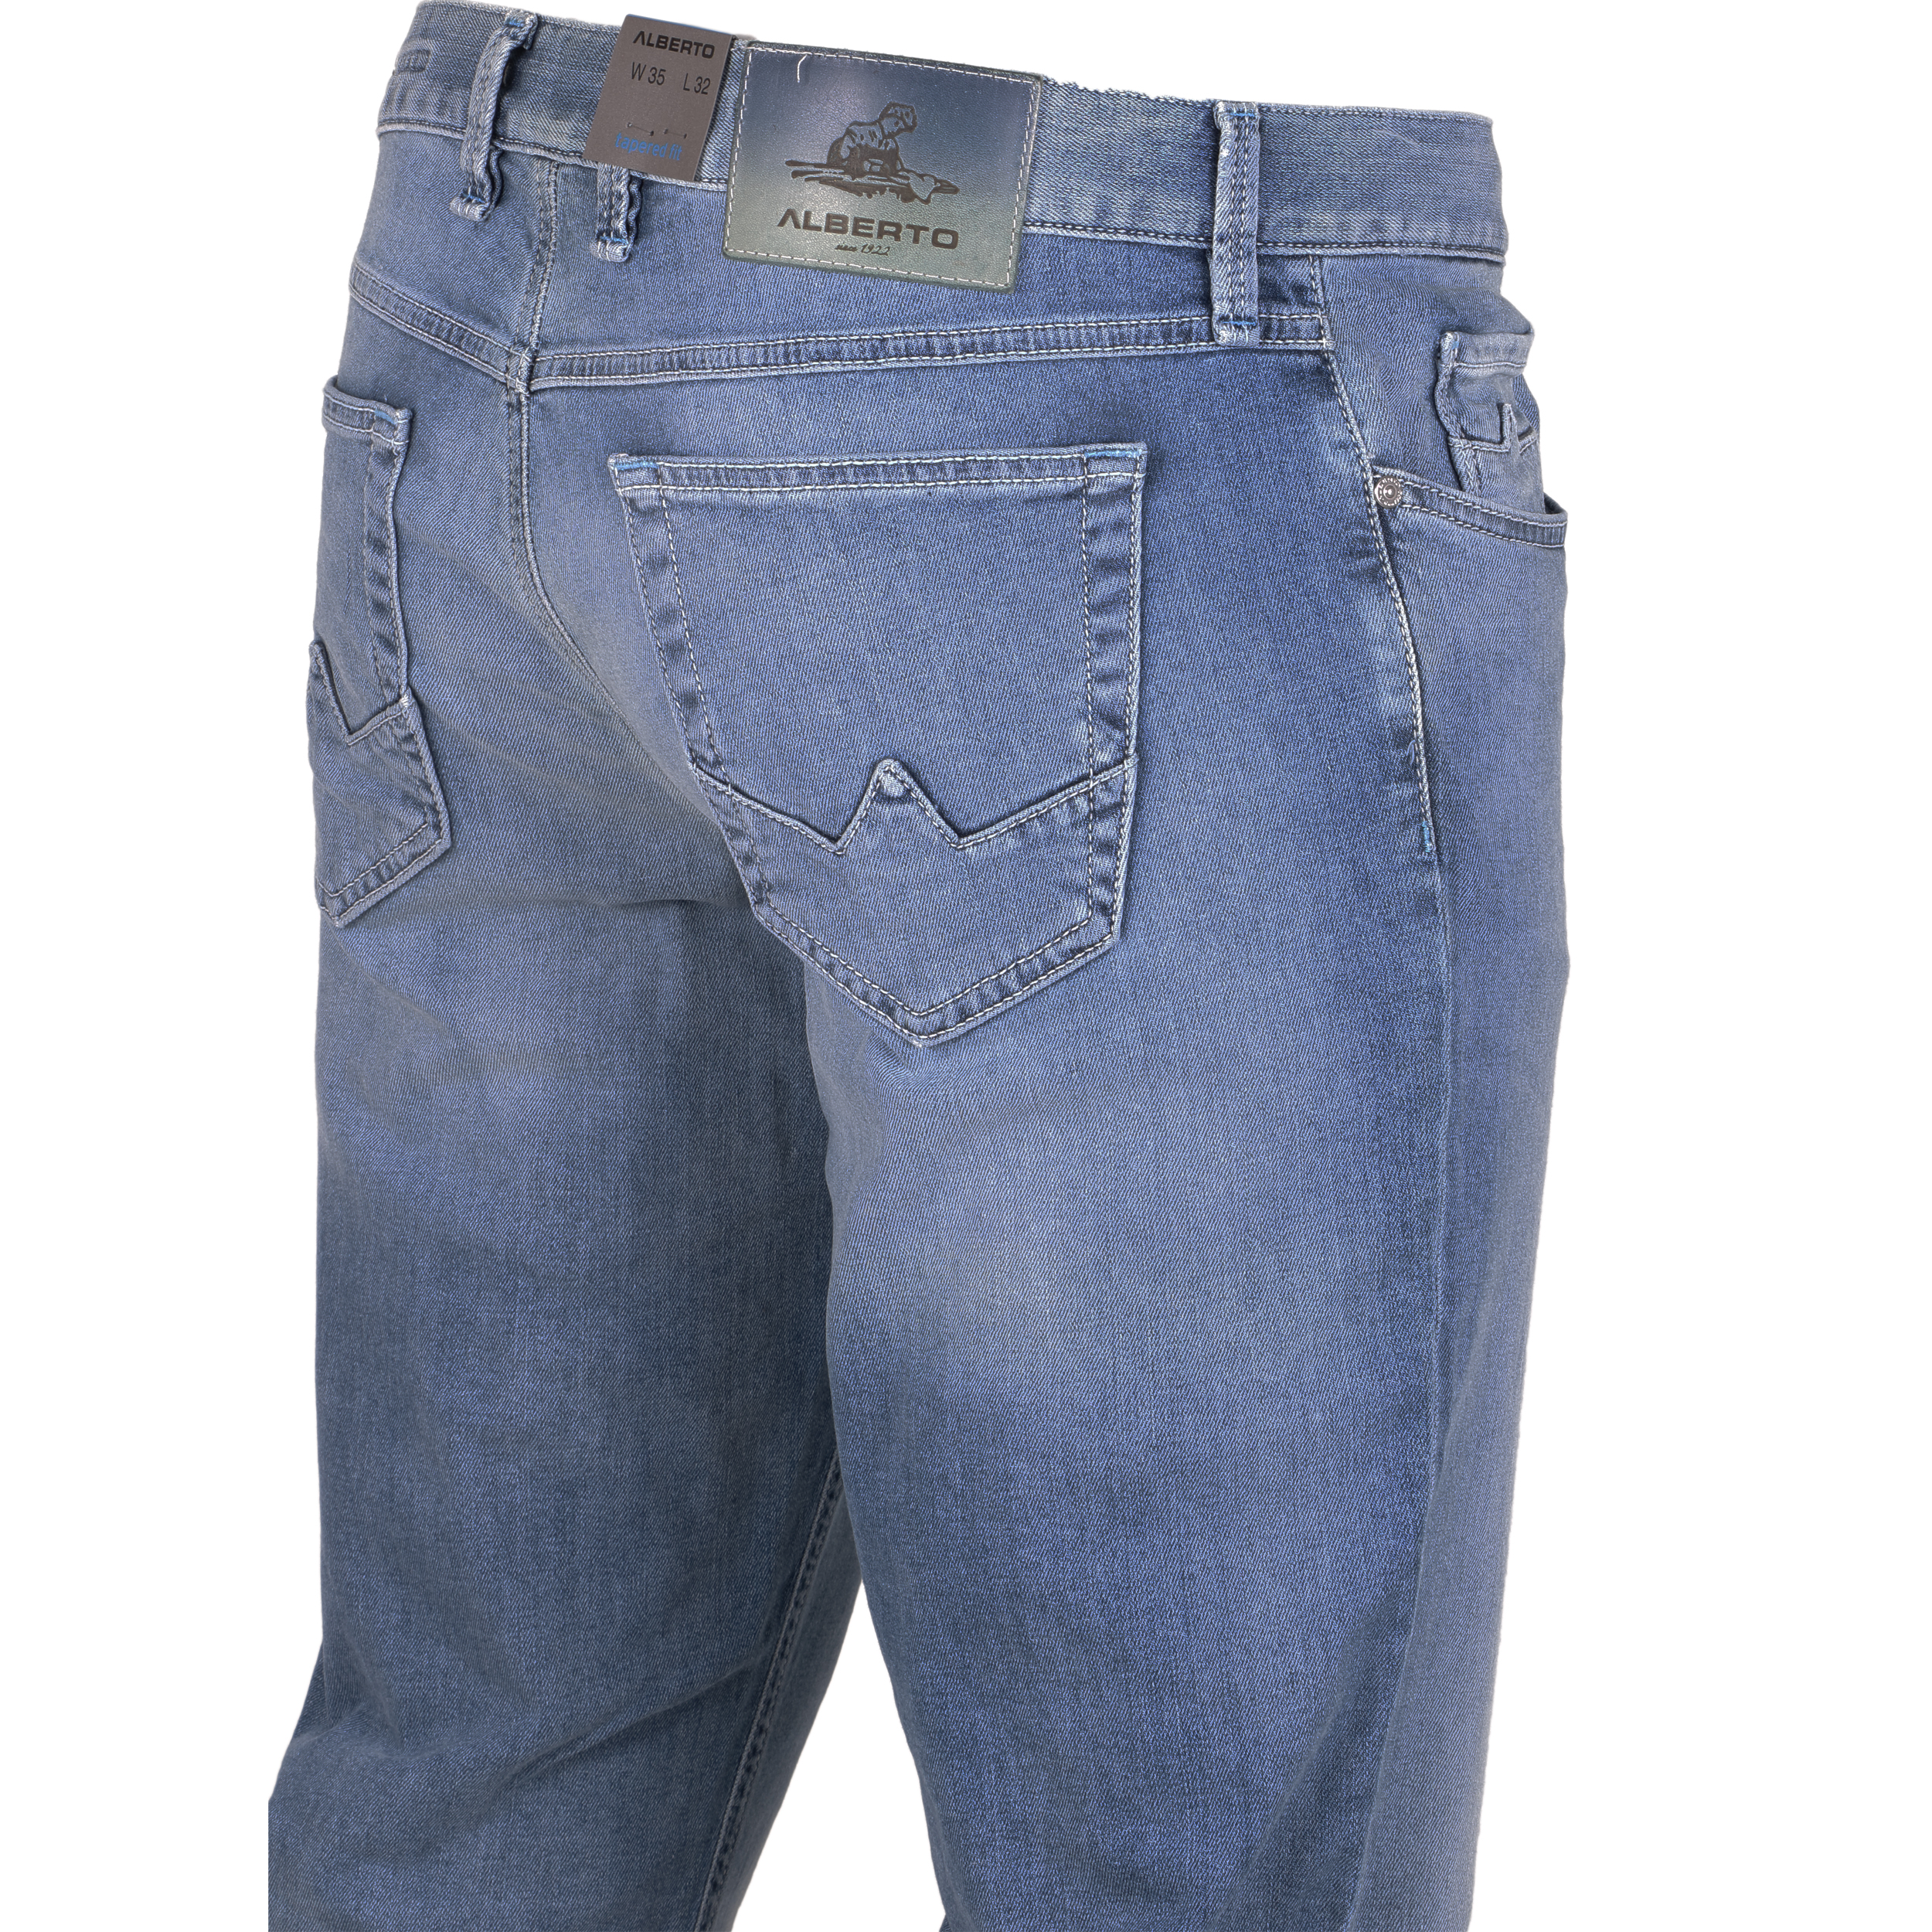 Alberto Herren Jeans Slipe Vintage - hellblau 30/34